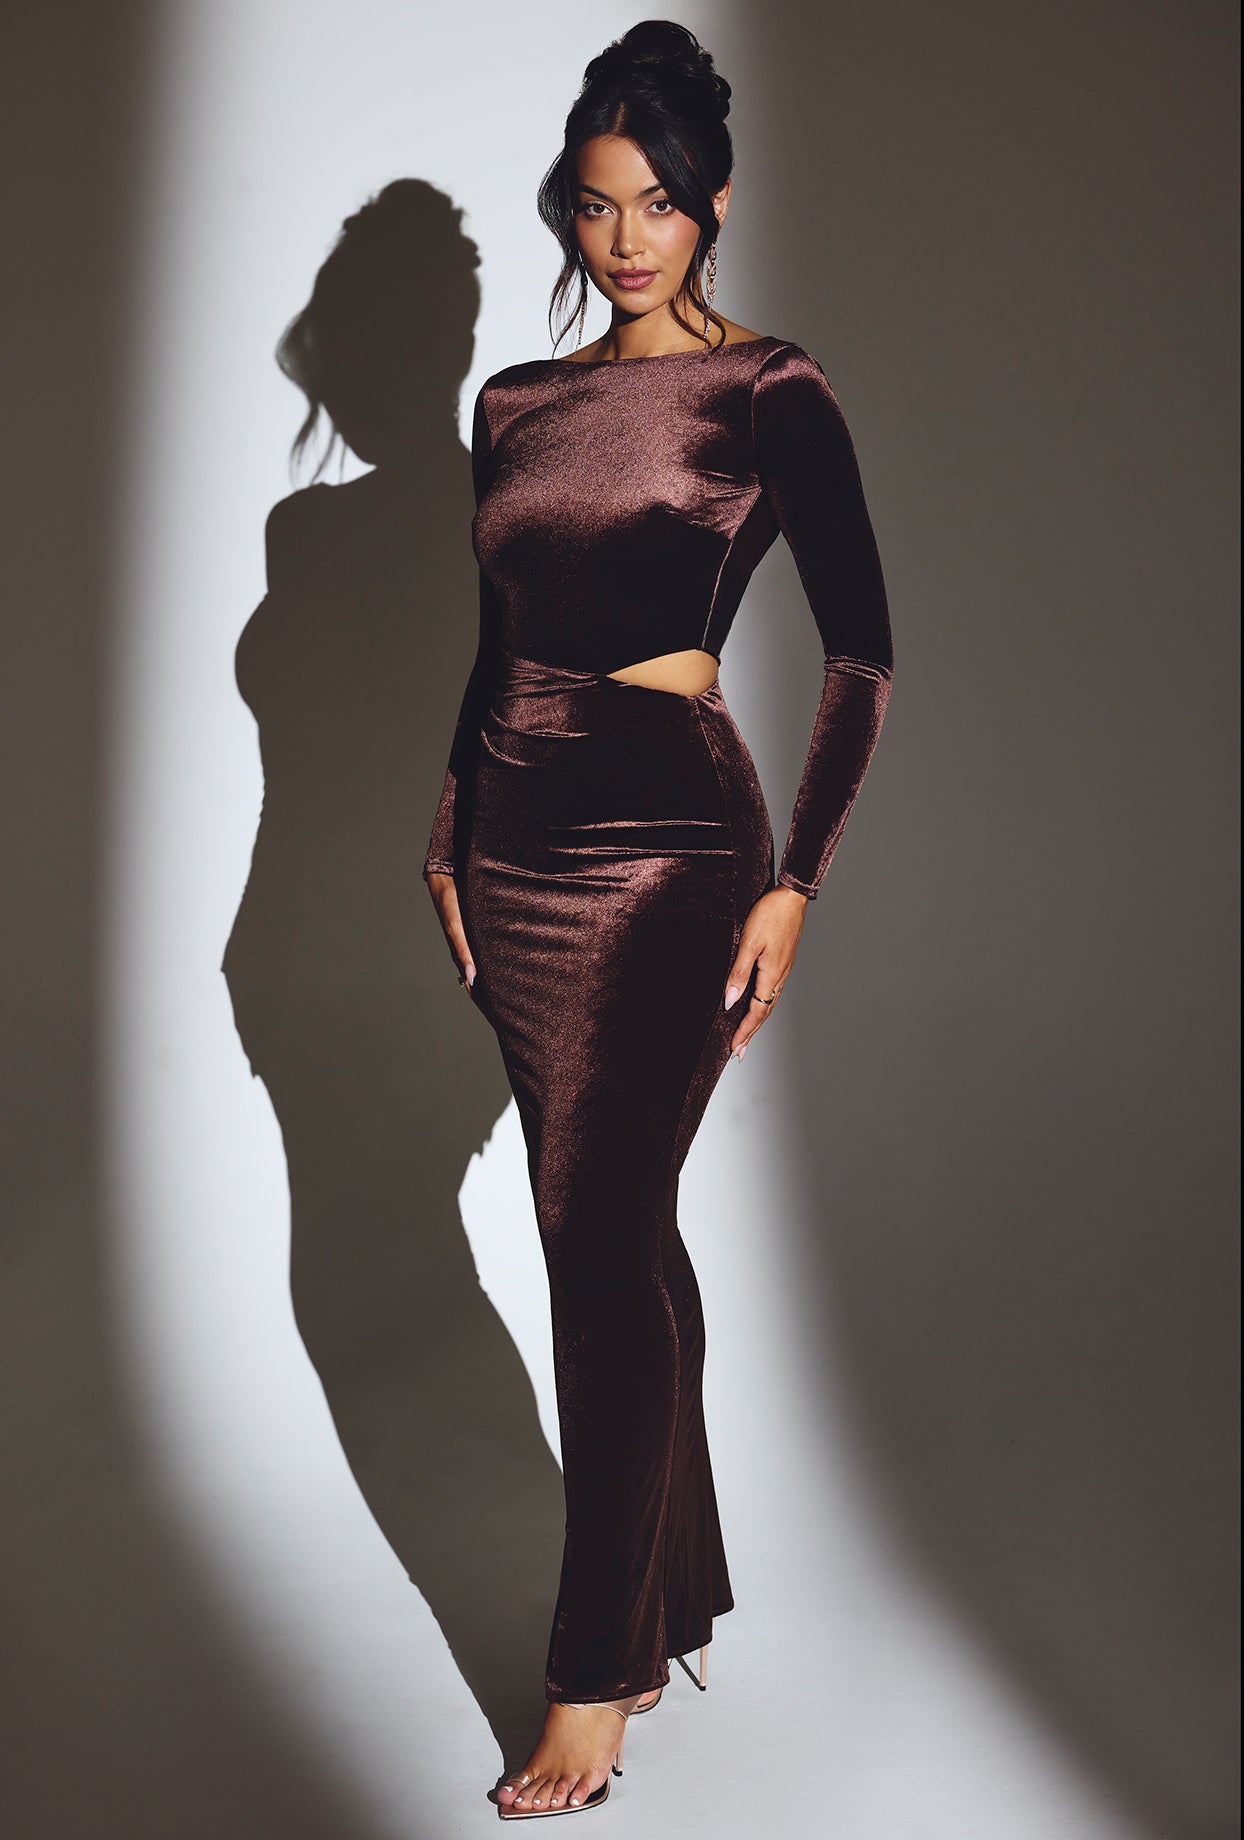 Aksamitna sukienka maxi z długim rękawem w kolorze czekoladowego brązu